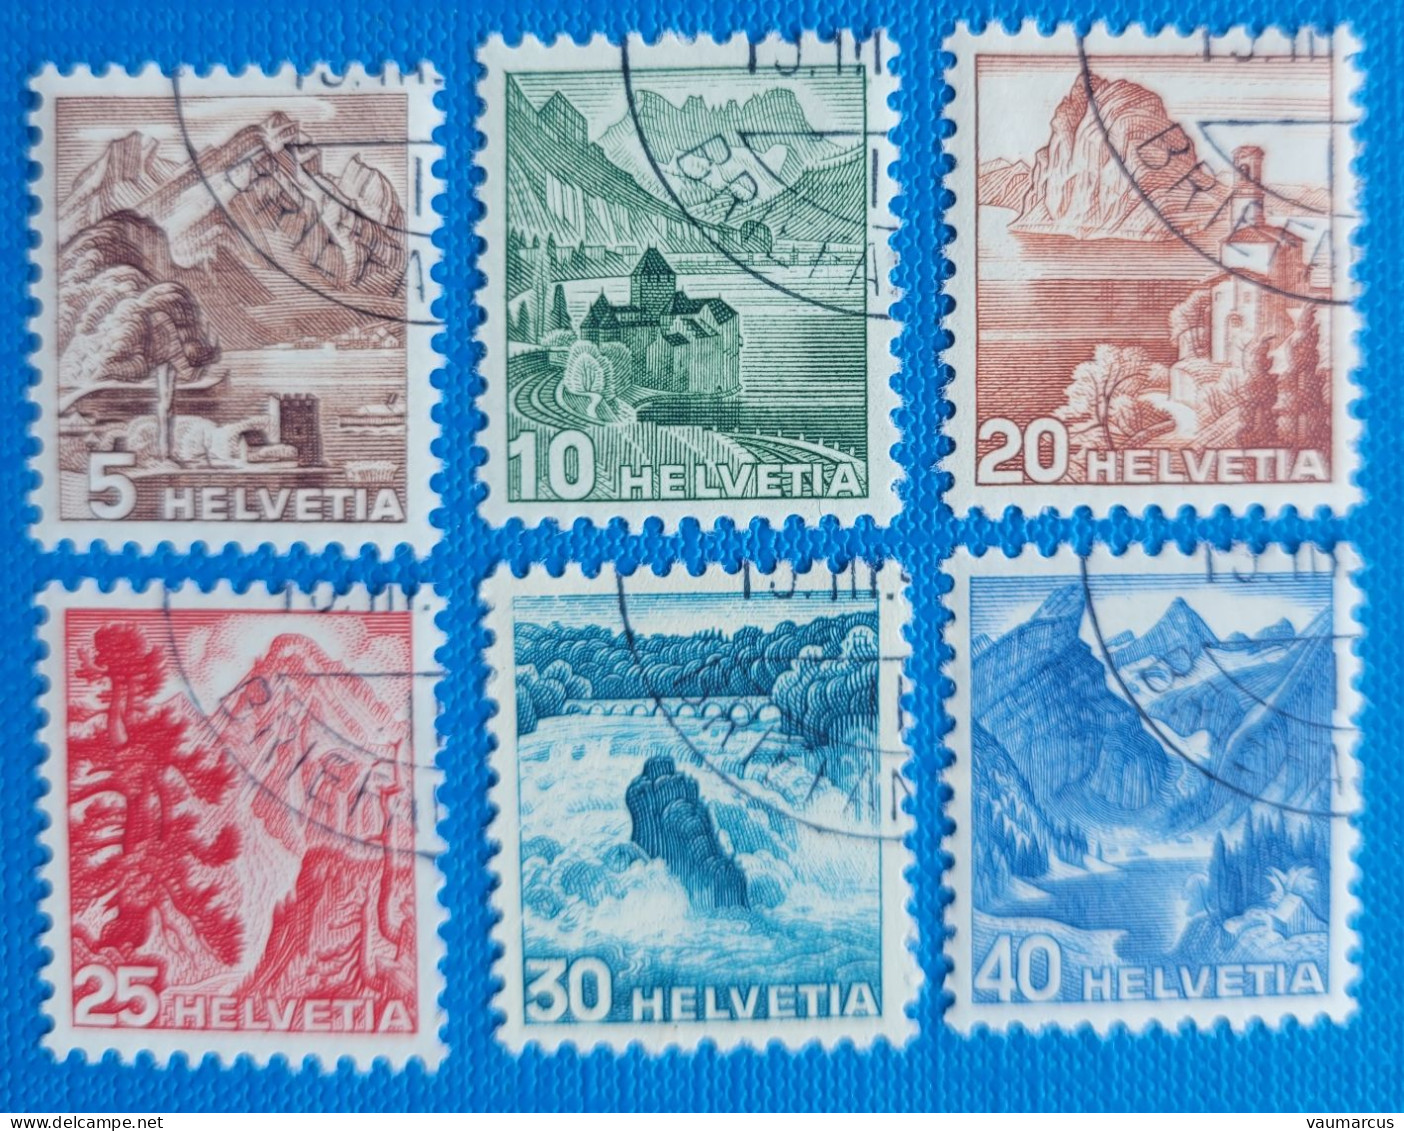 1948 Zu 285-290 / Mi 500-505 / YT461-466 Obl. 1er Jour 15.3.(48) LP Voir Description - Used Stamps